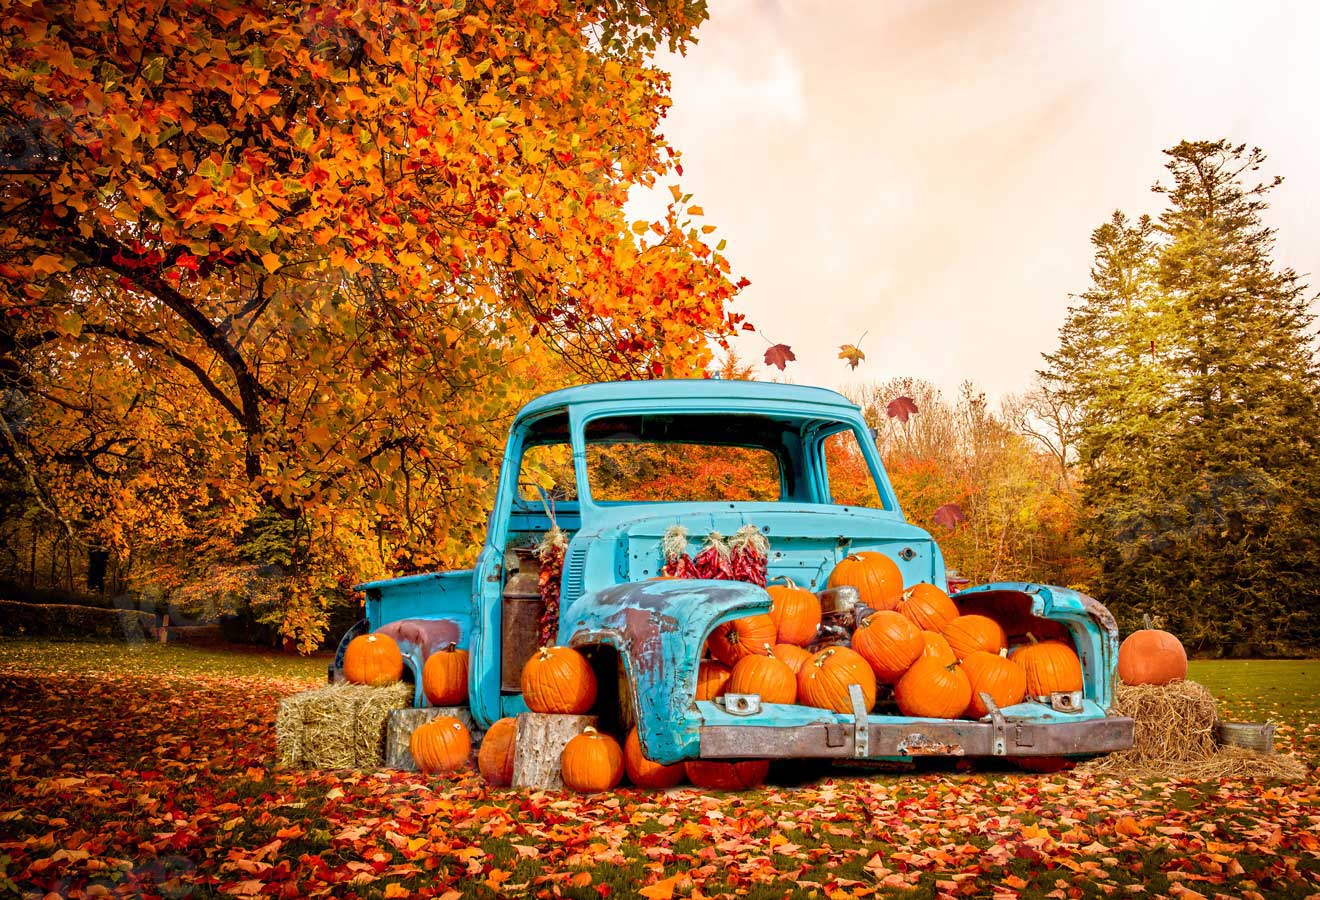 Kate Forêt de toile de fond de voiture de citrouille d'automne pour la photographie